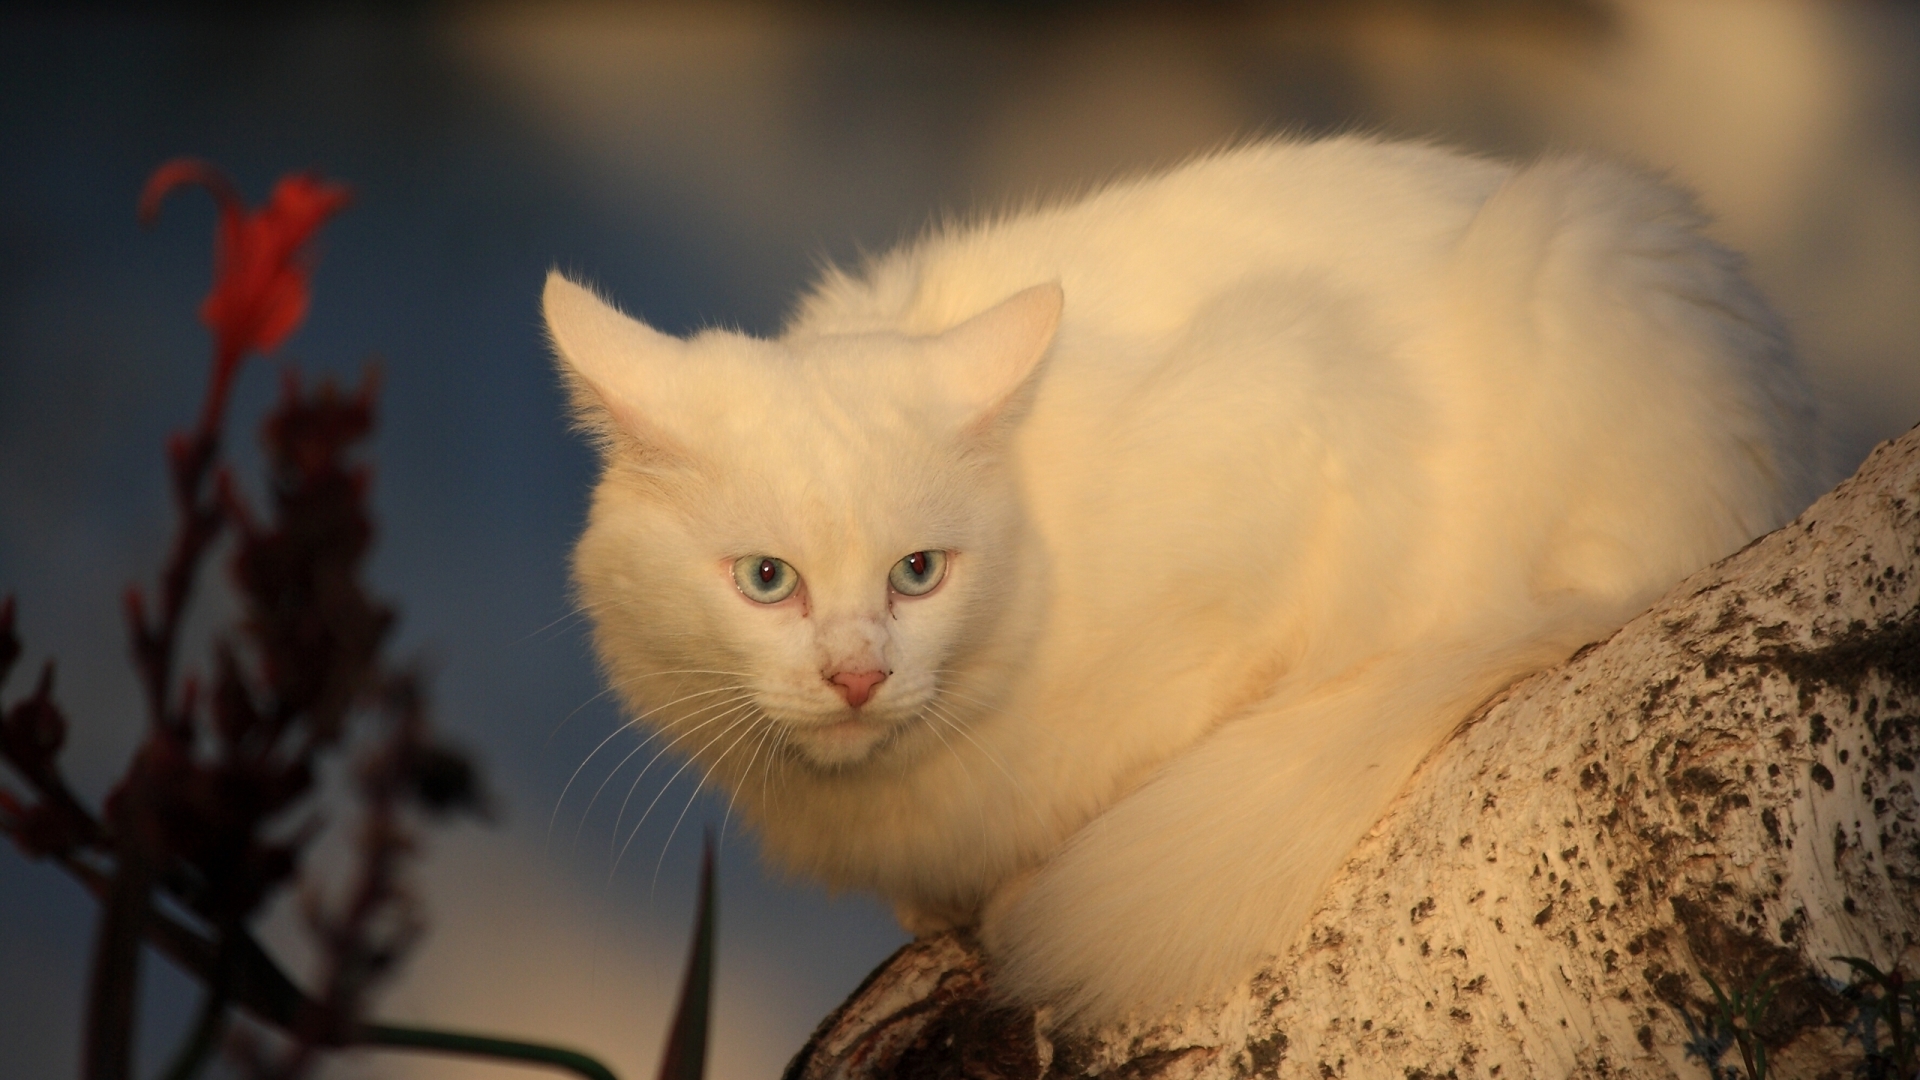 White Cat for 1920 x 1080 HDTV 1080p resolution